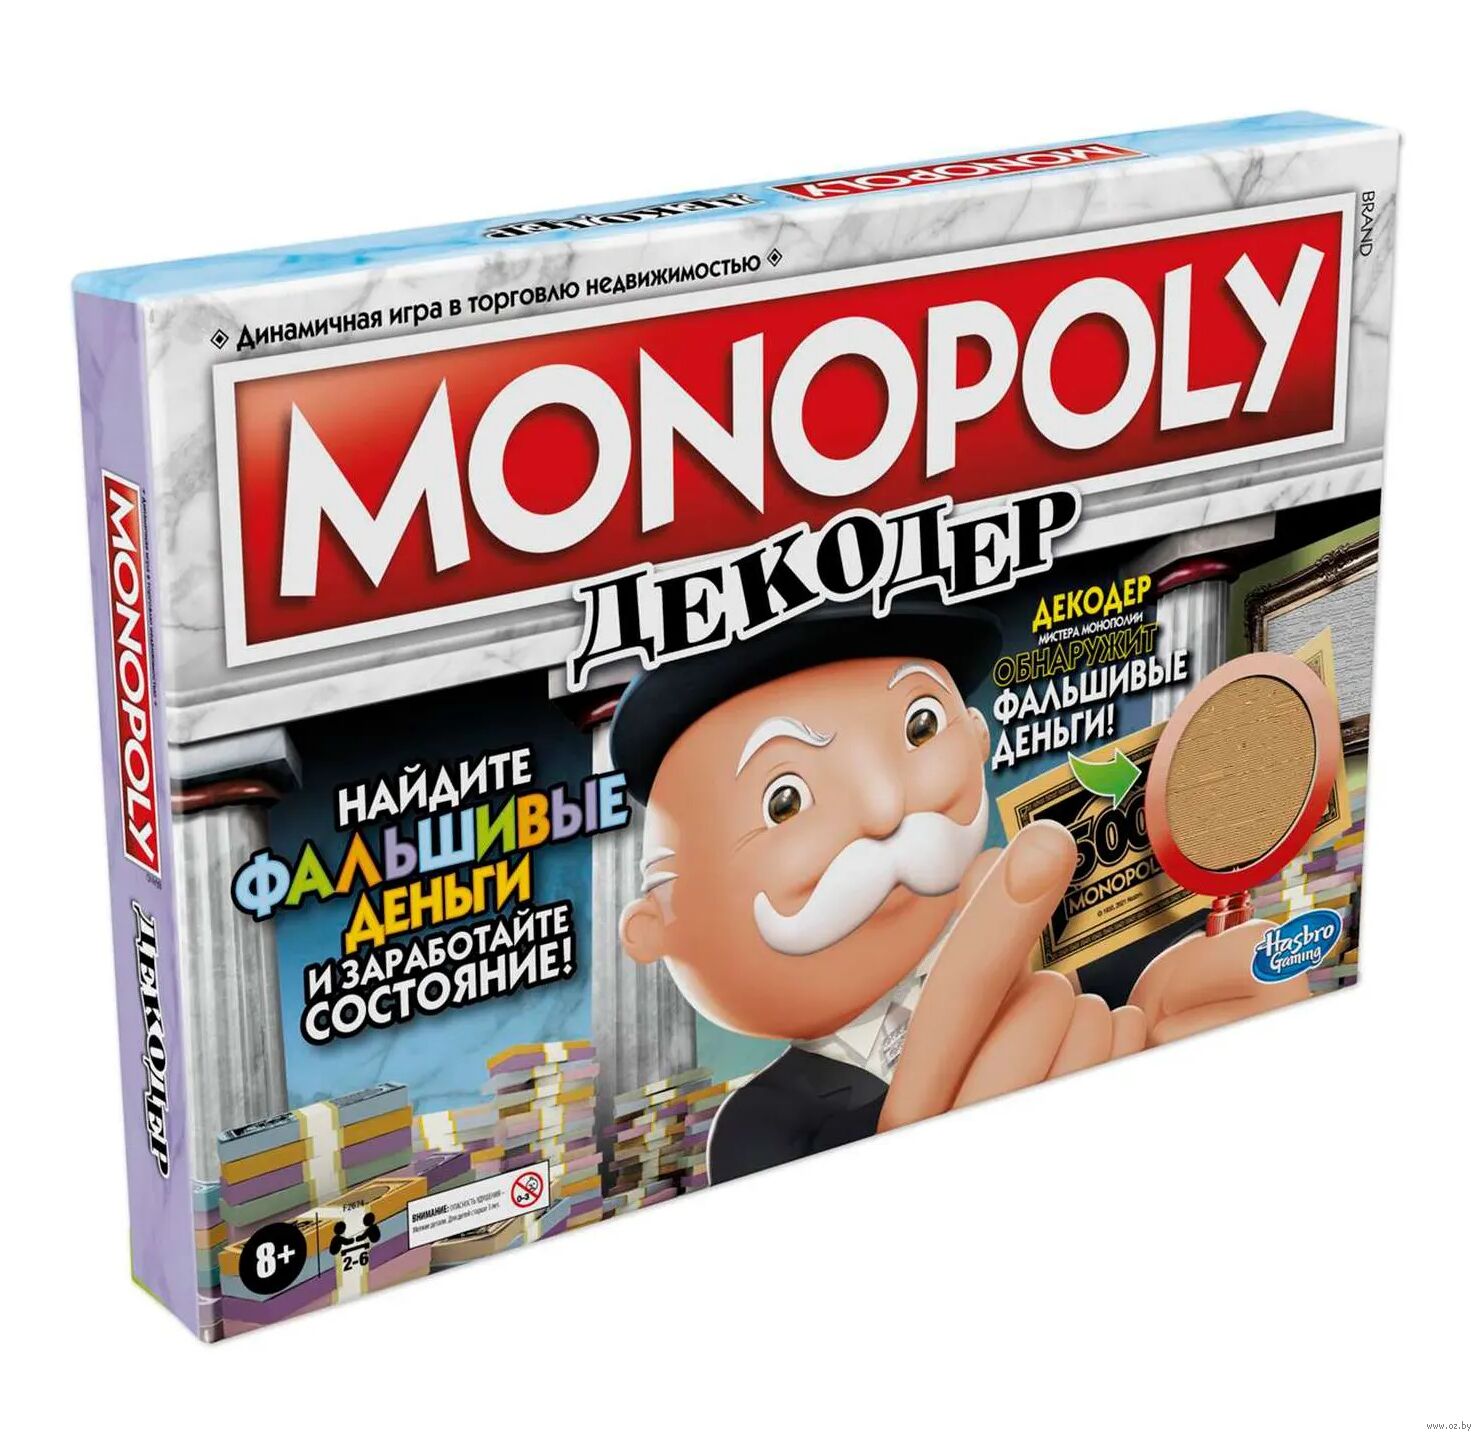 Монополия Декодер — настольная игра от Hasbro : купить игру Монополия Декодер : в интернет-магазине — OZ.by